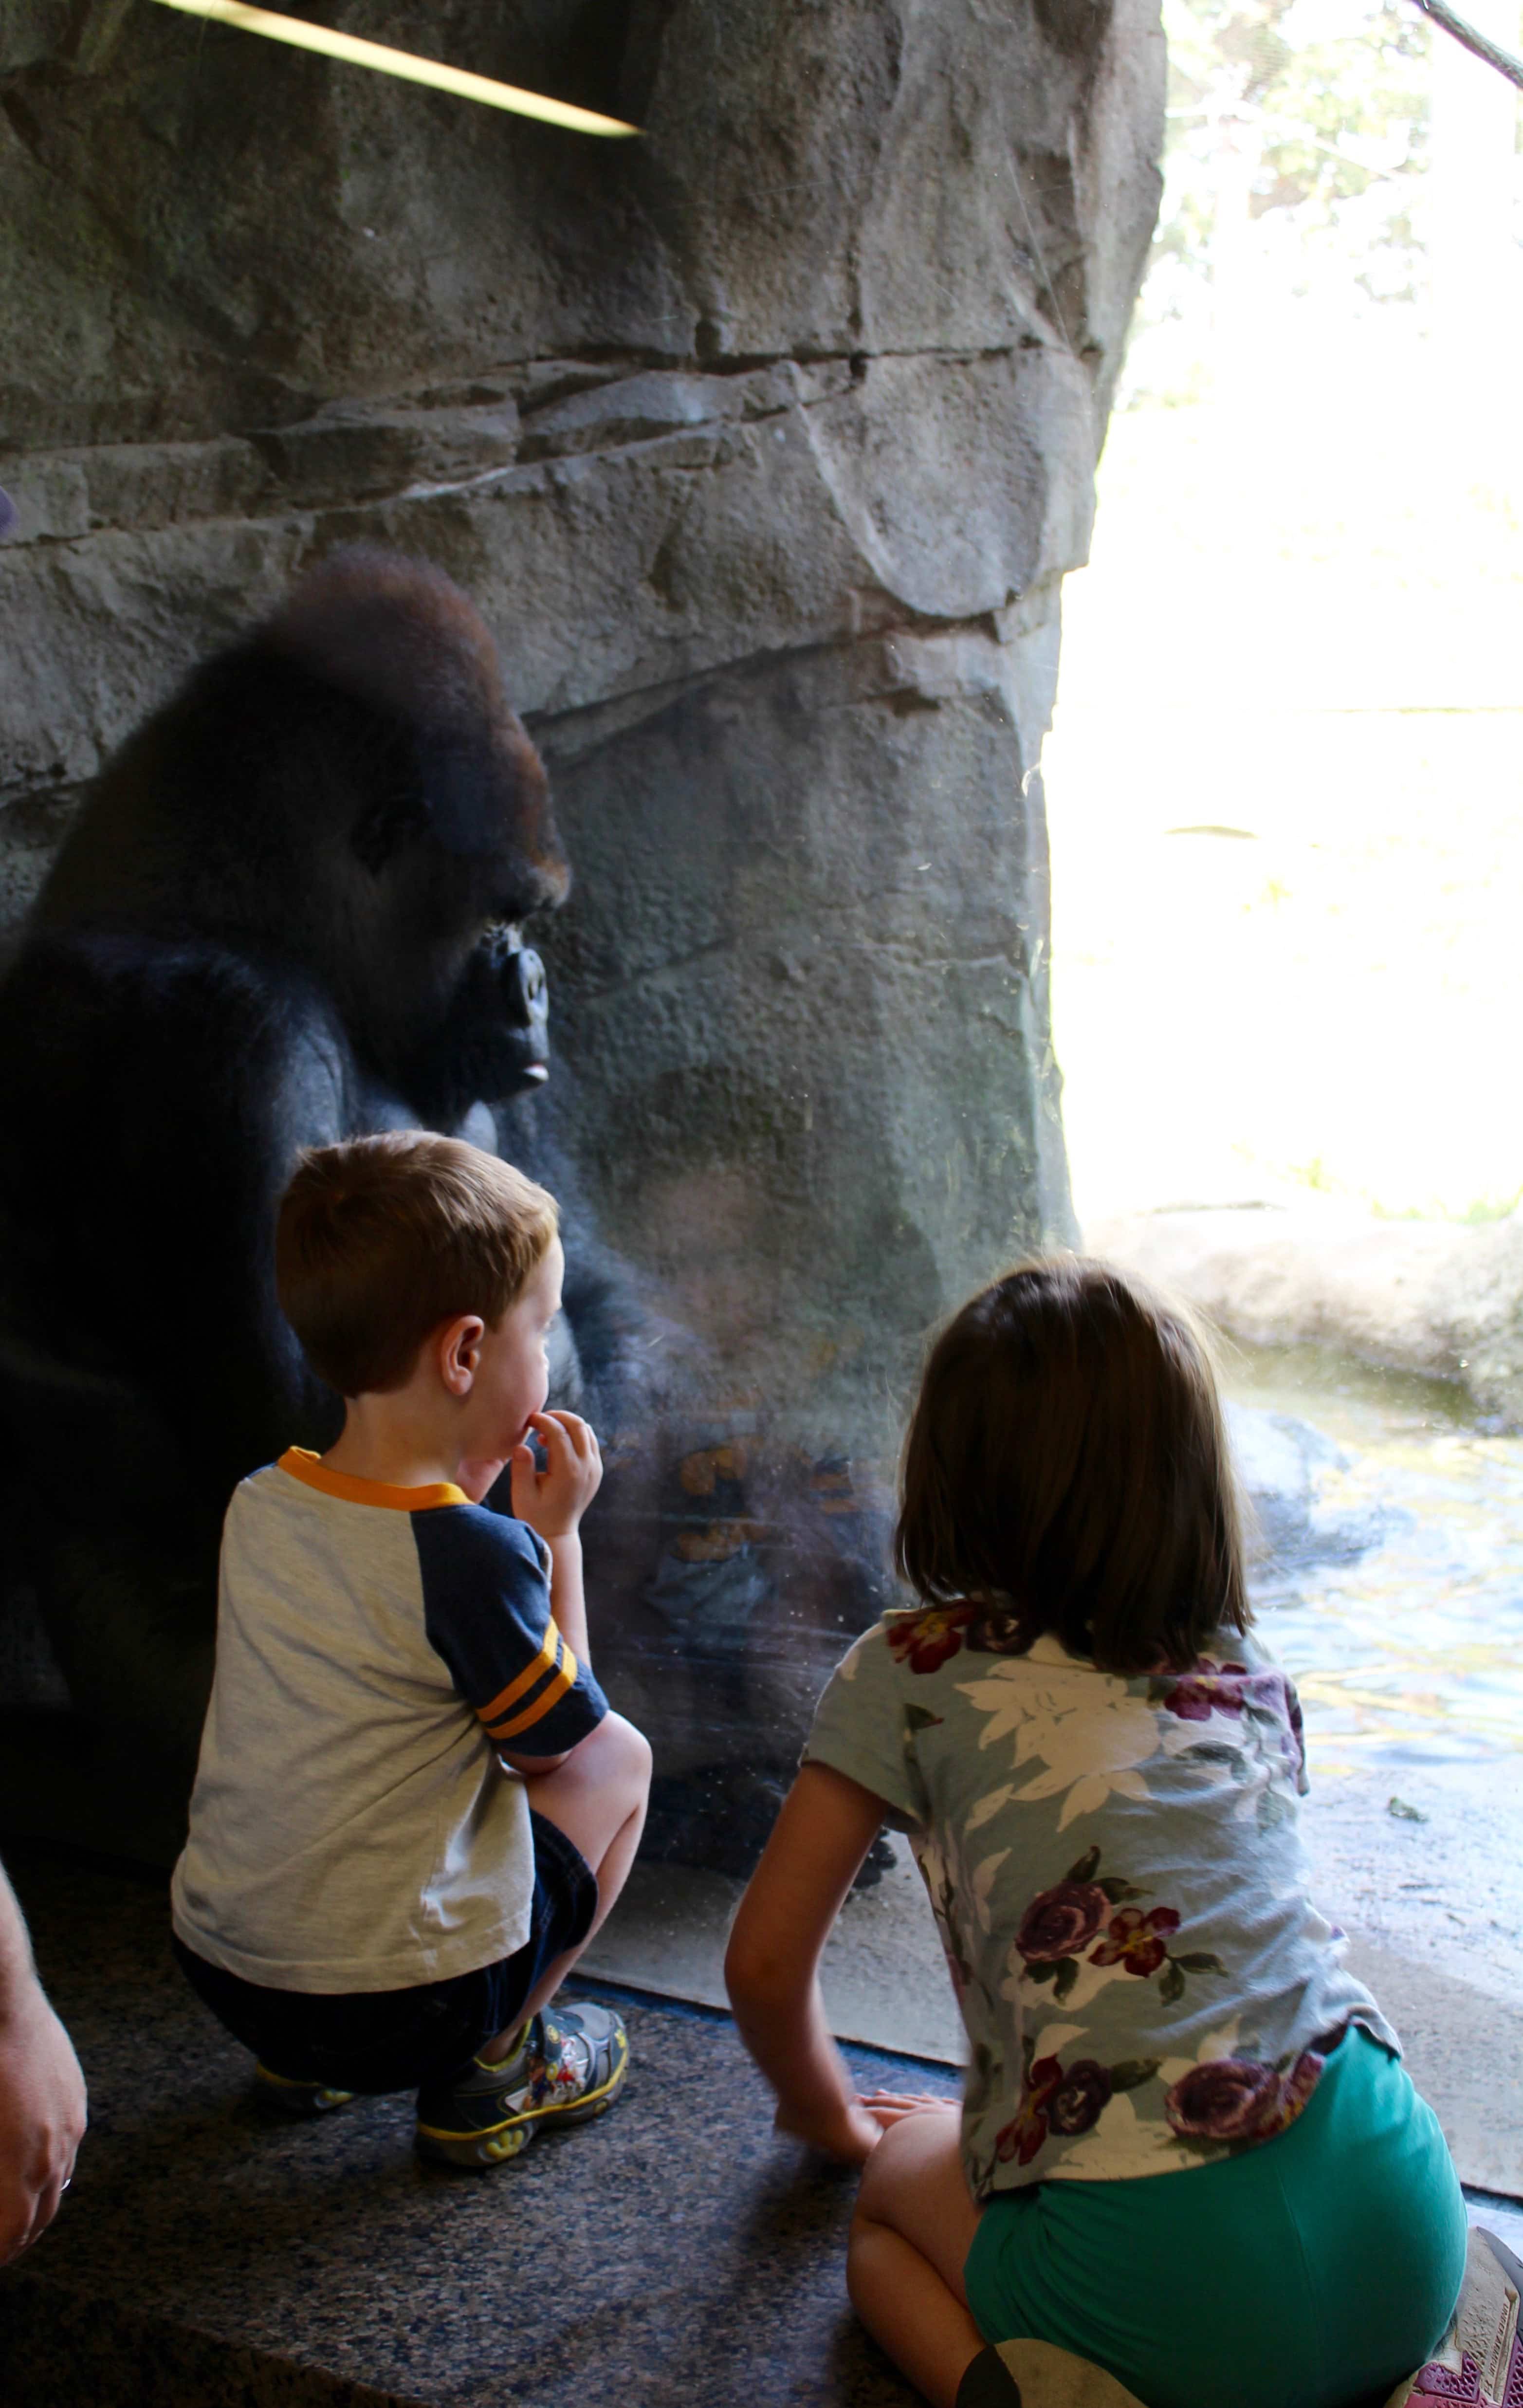 Gorilla's at the Como Zoo